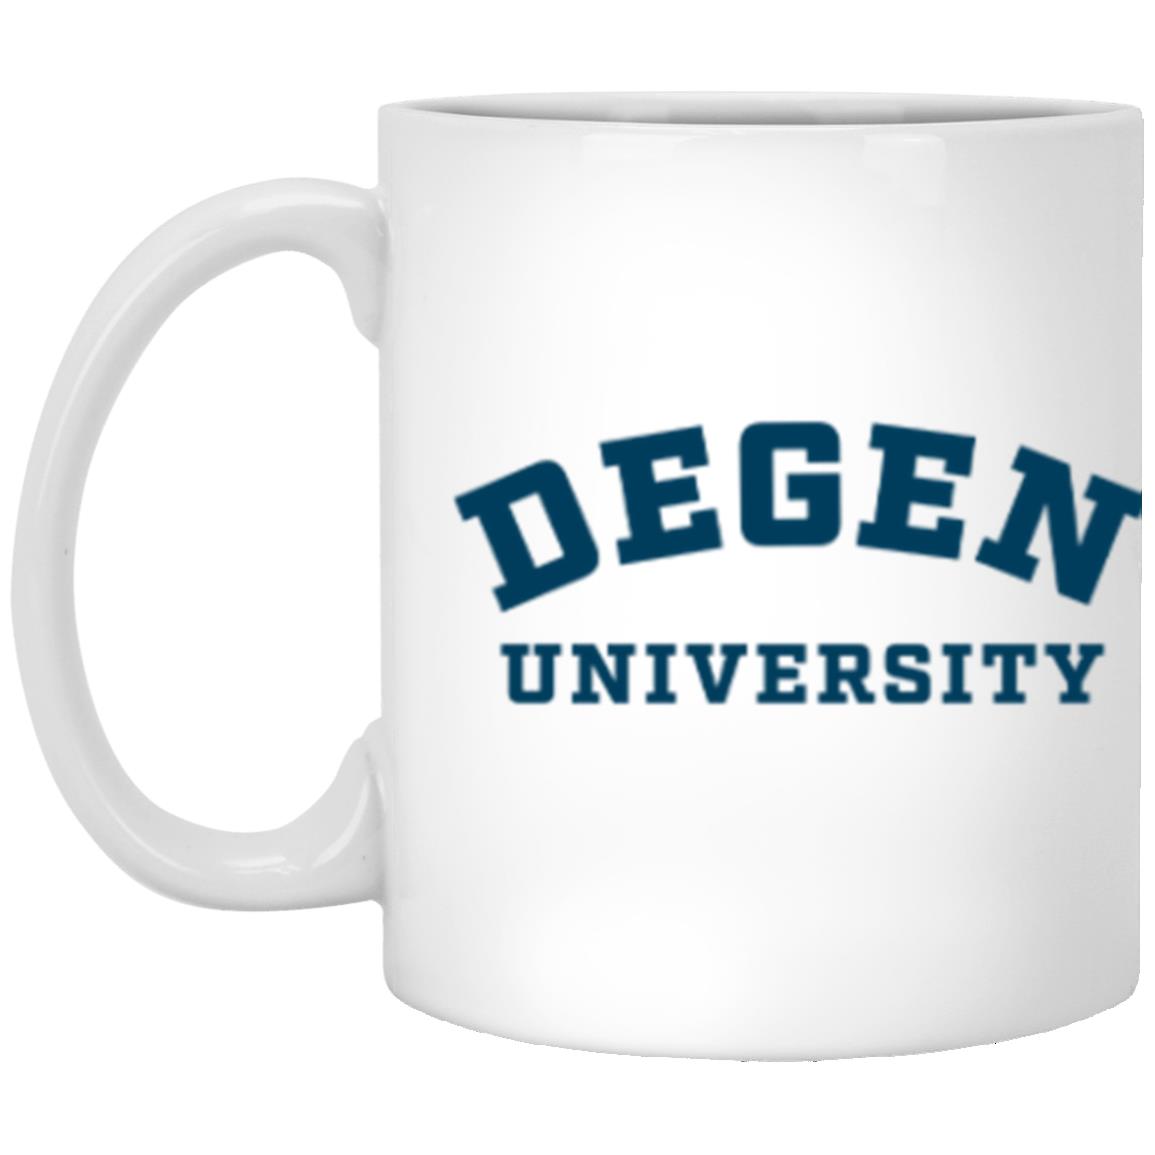 Degen University - XP8434 11 oz. White Mug